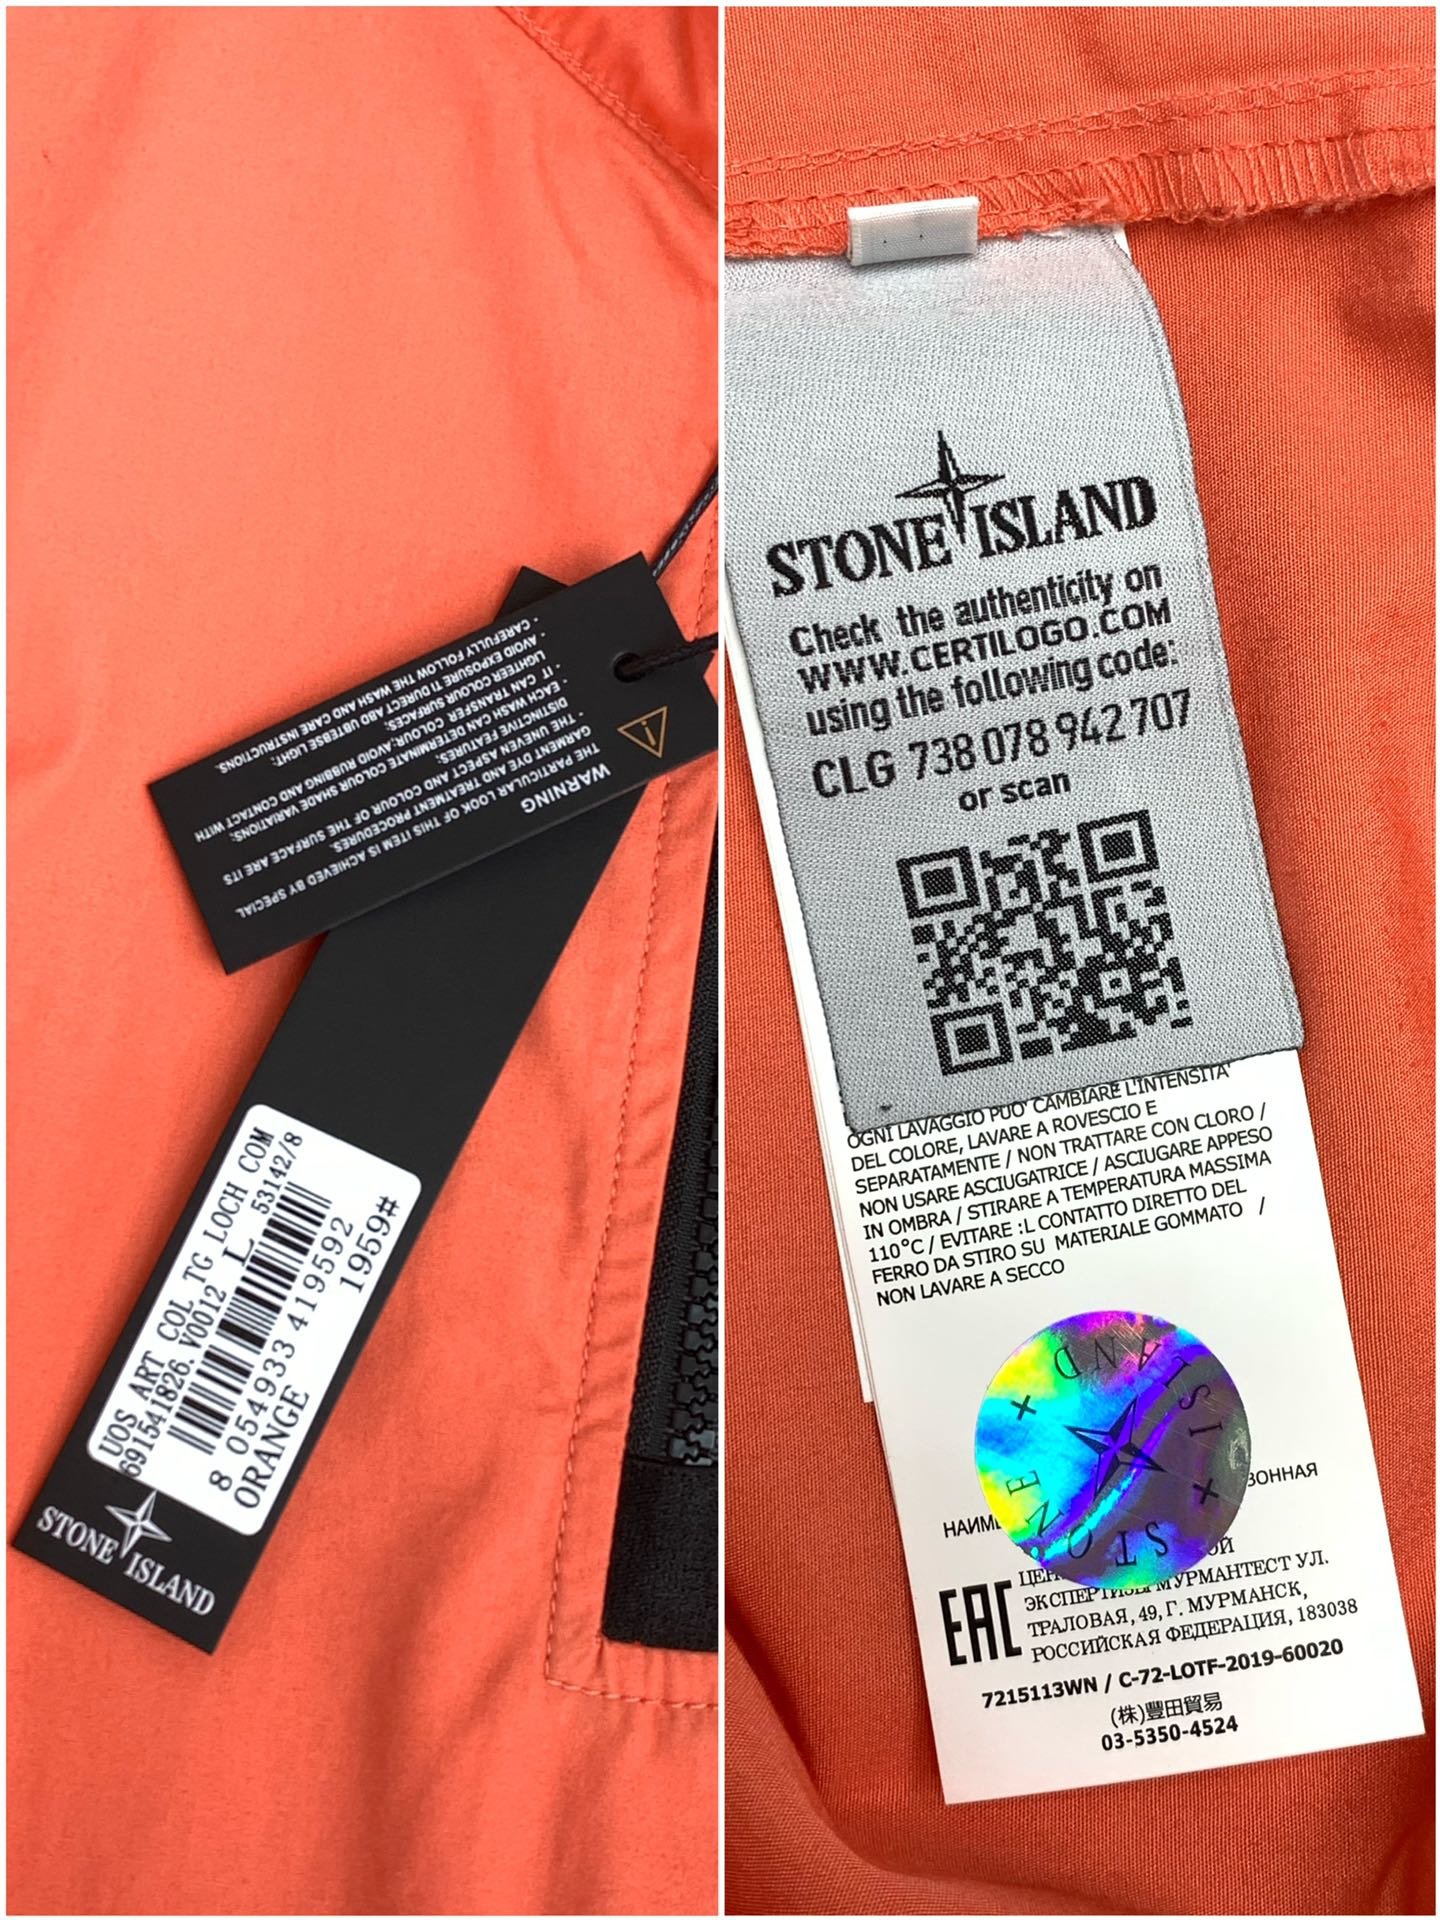 STONEISLAND石头岛金属尼龙多拉链防晒服外套独家制作的面料让这件防晒服成为当下最火的搭配利器！面